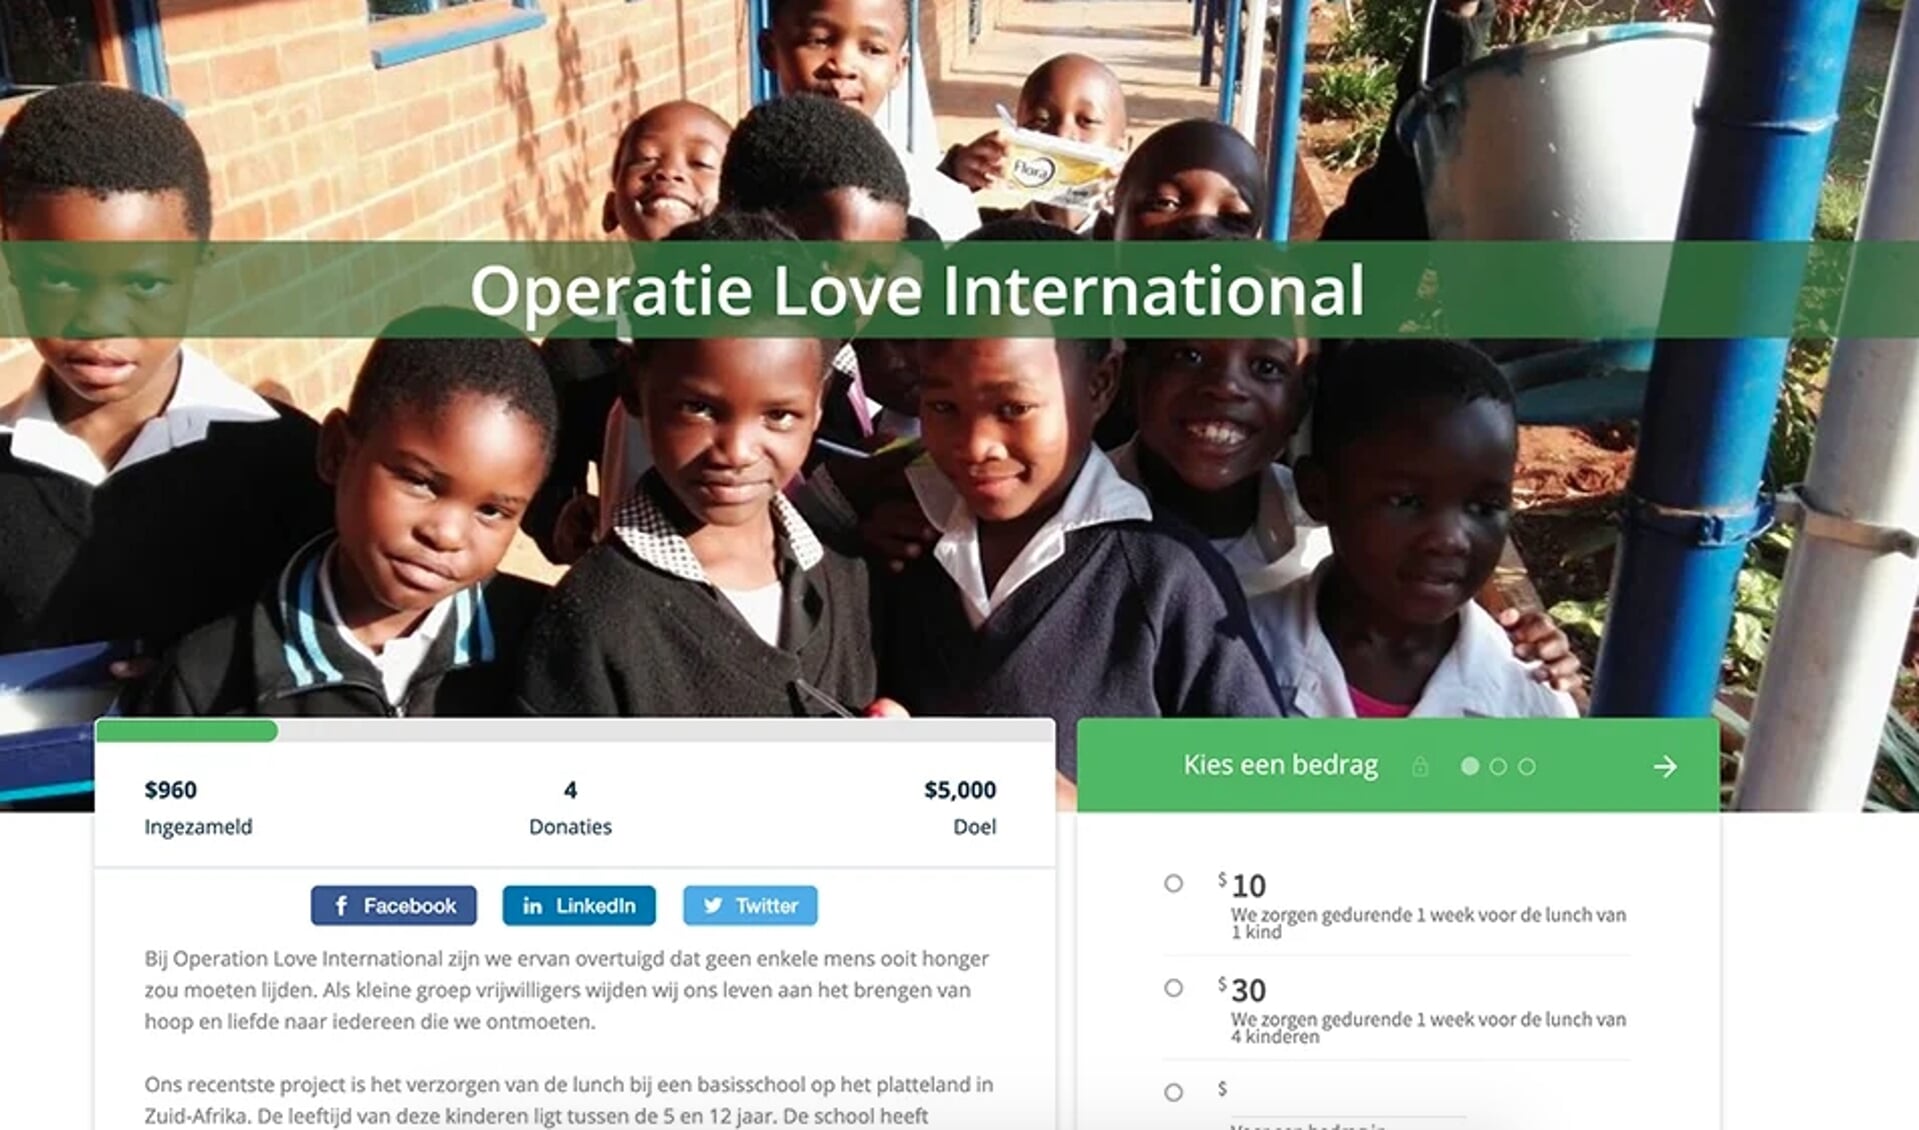 Online donatie voor een goed doel in Afrika